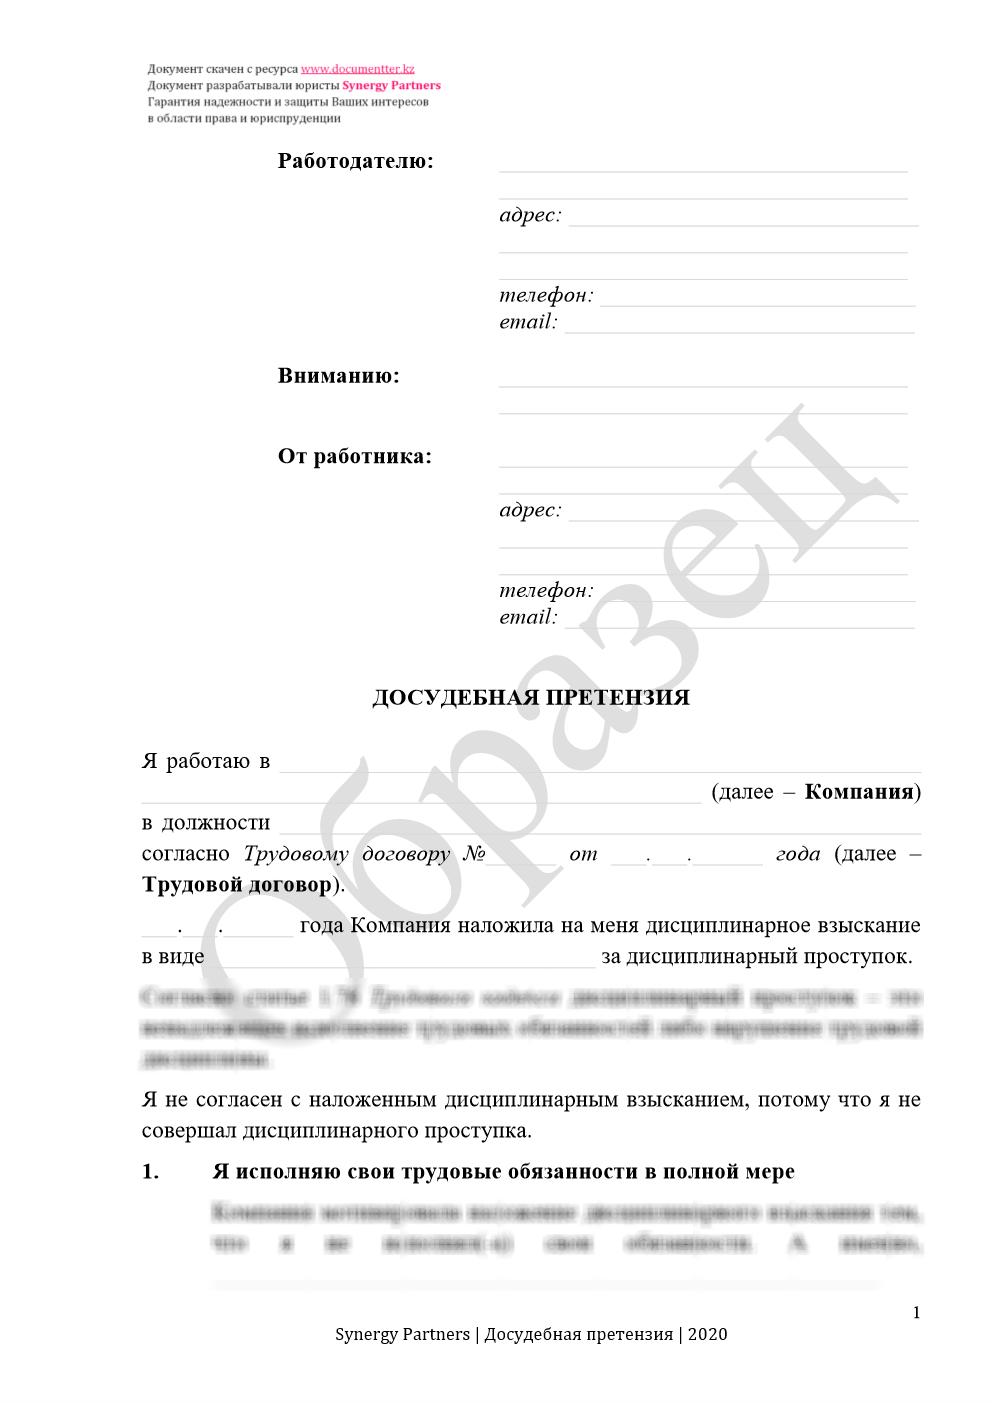 Досудебная претензия, если незаконно наложили дисциплинарное взыскание 8 | documentter.kz в Казахстане 